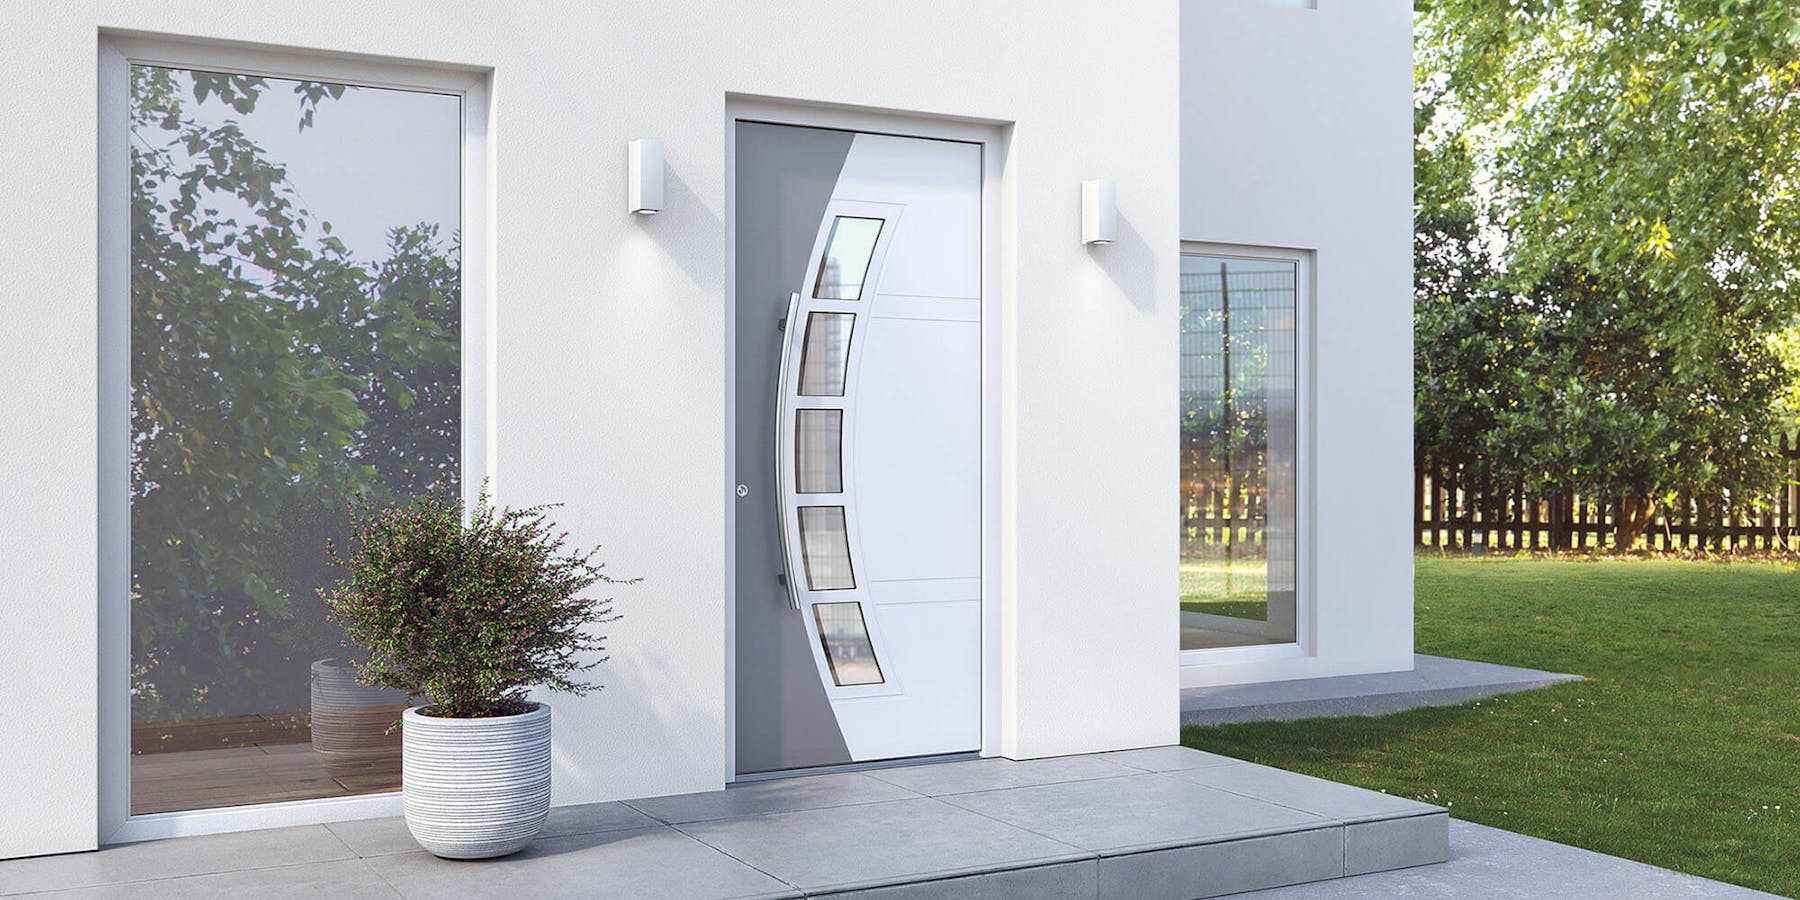 Was ist besser: Haustüren aus Aluminium oder Kunststoff?